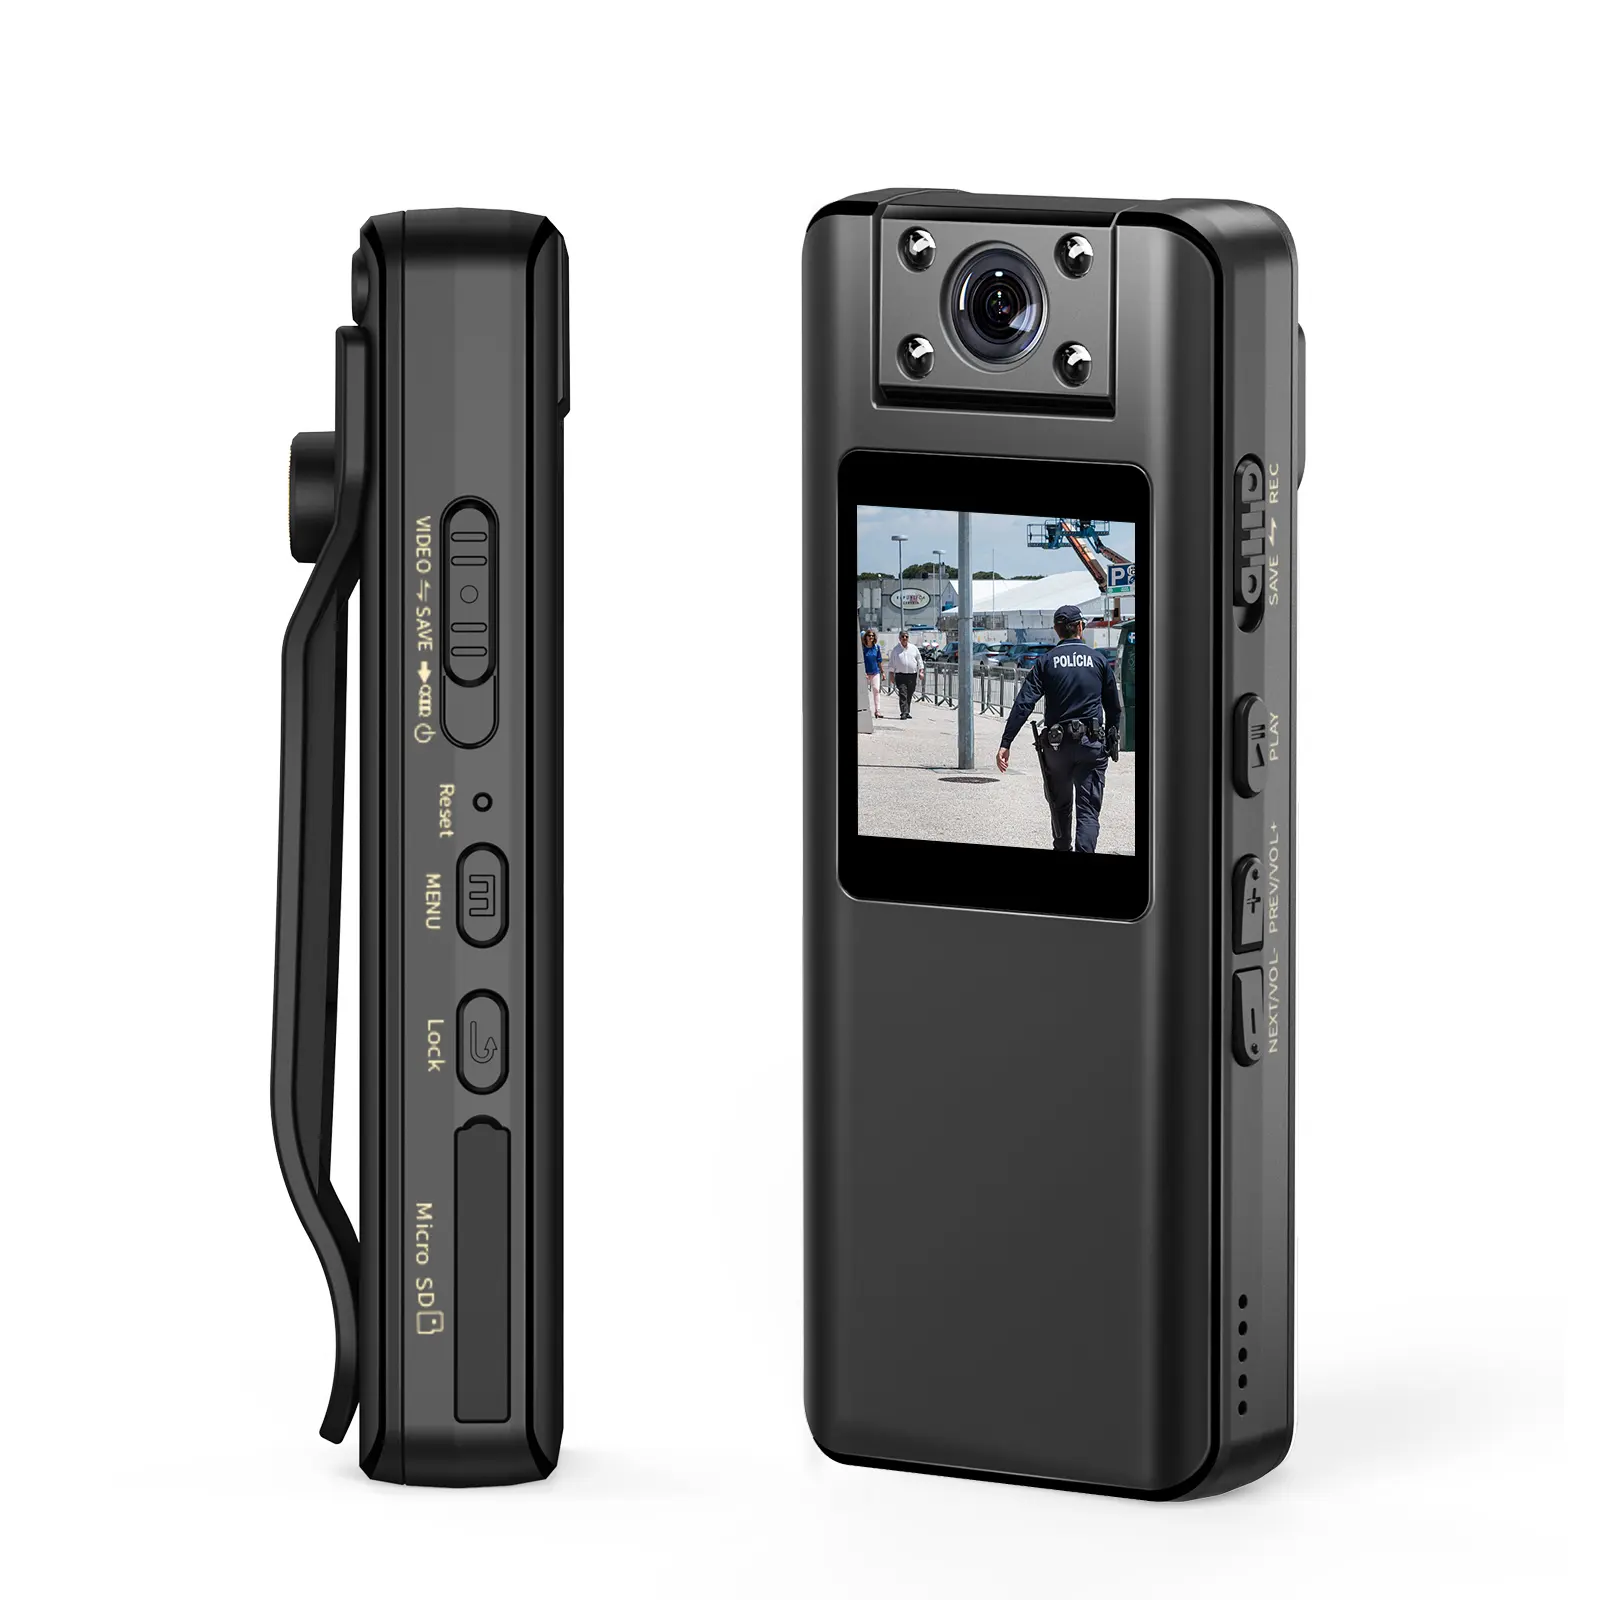 Boblovv A22 kamera perekam Video 1080P, ukuran kecil 4 jam perekaman Video 160 derajat sudut lebar klip putar penglihatan malam dikenakan di badan